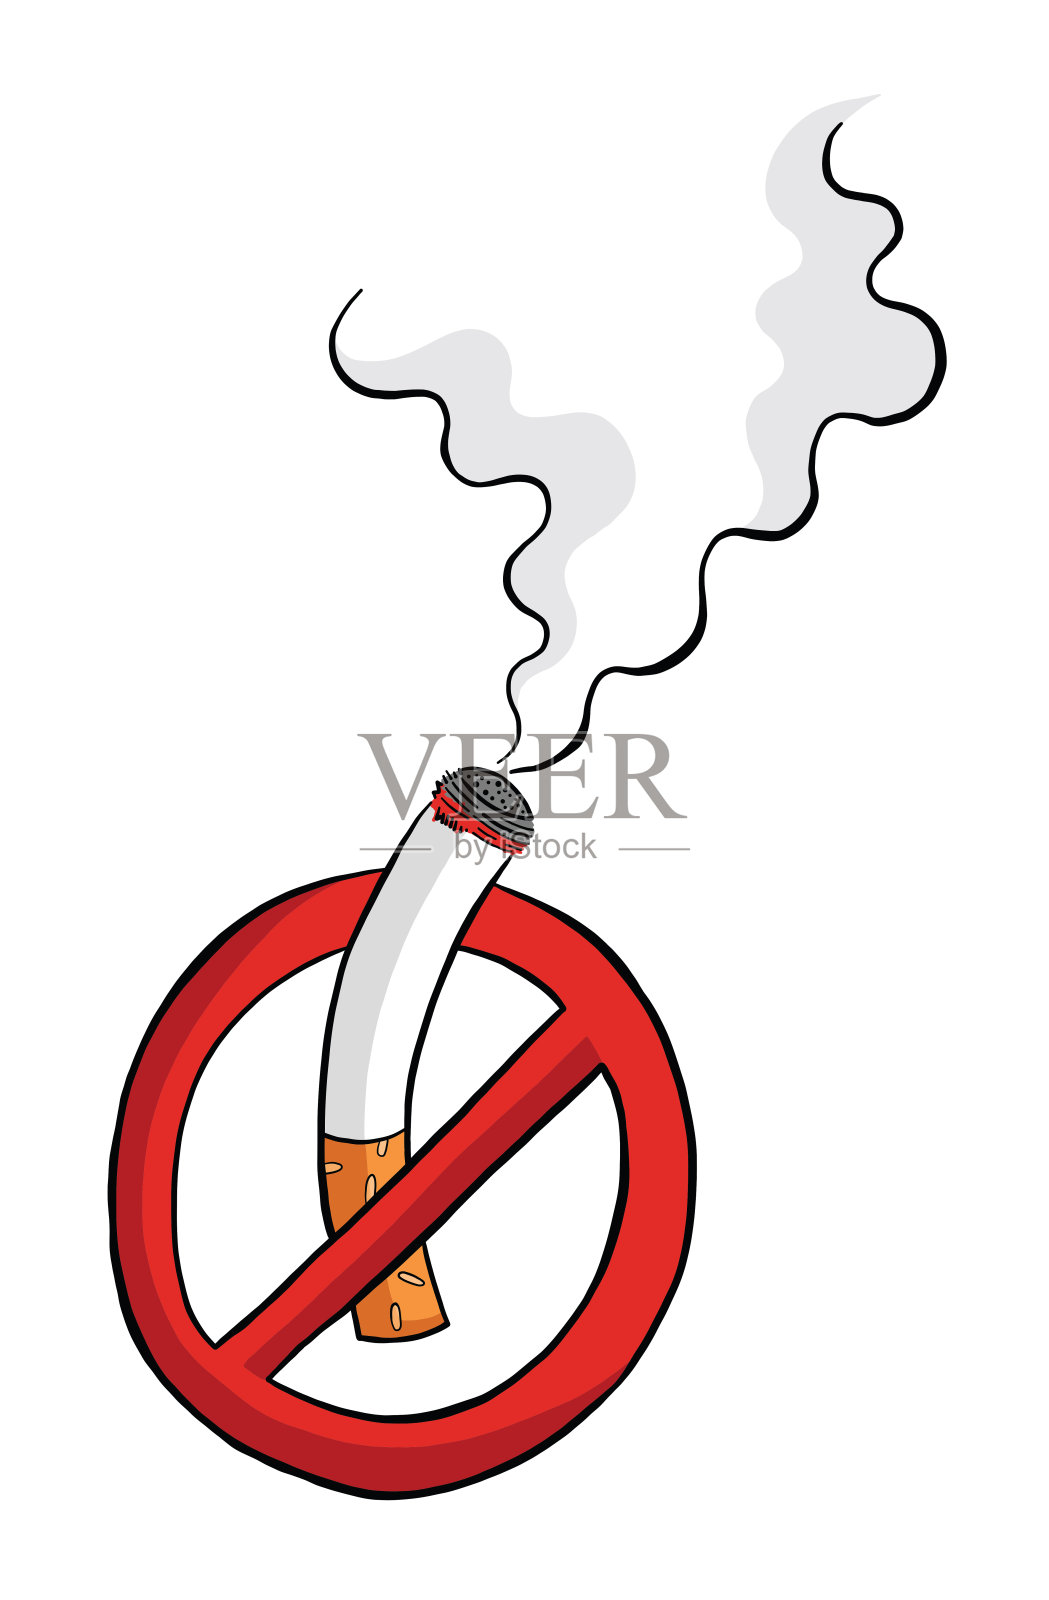 禁止吸烟标志、燃烧香烟和烟雾矢量图。插画图片素材